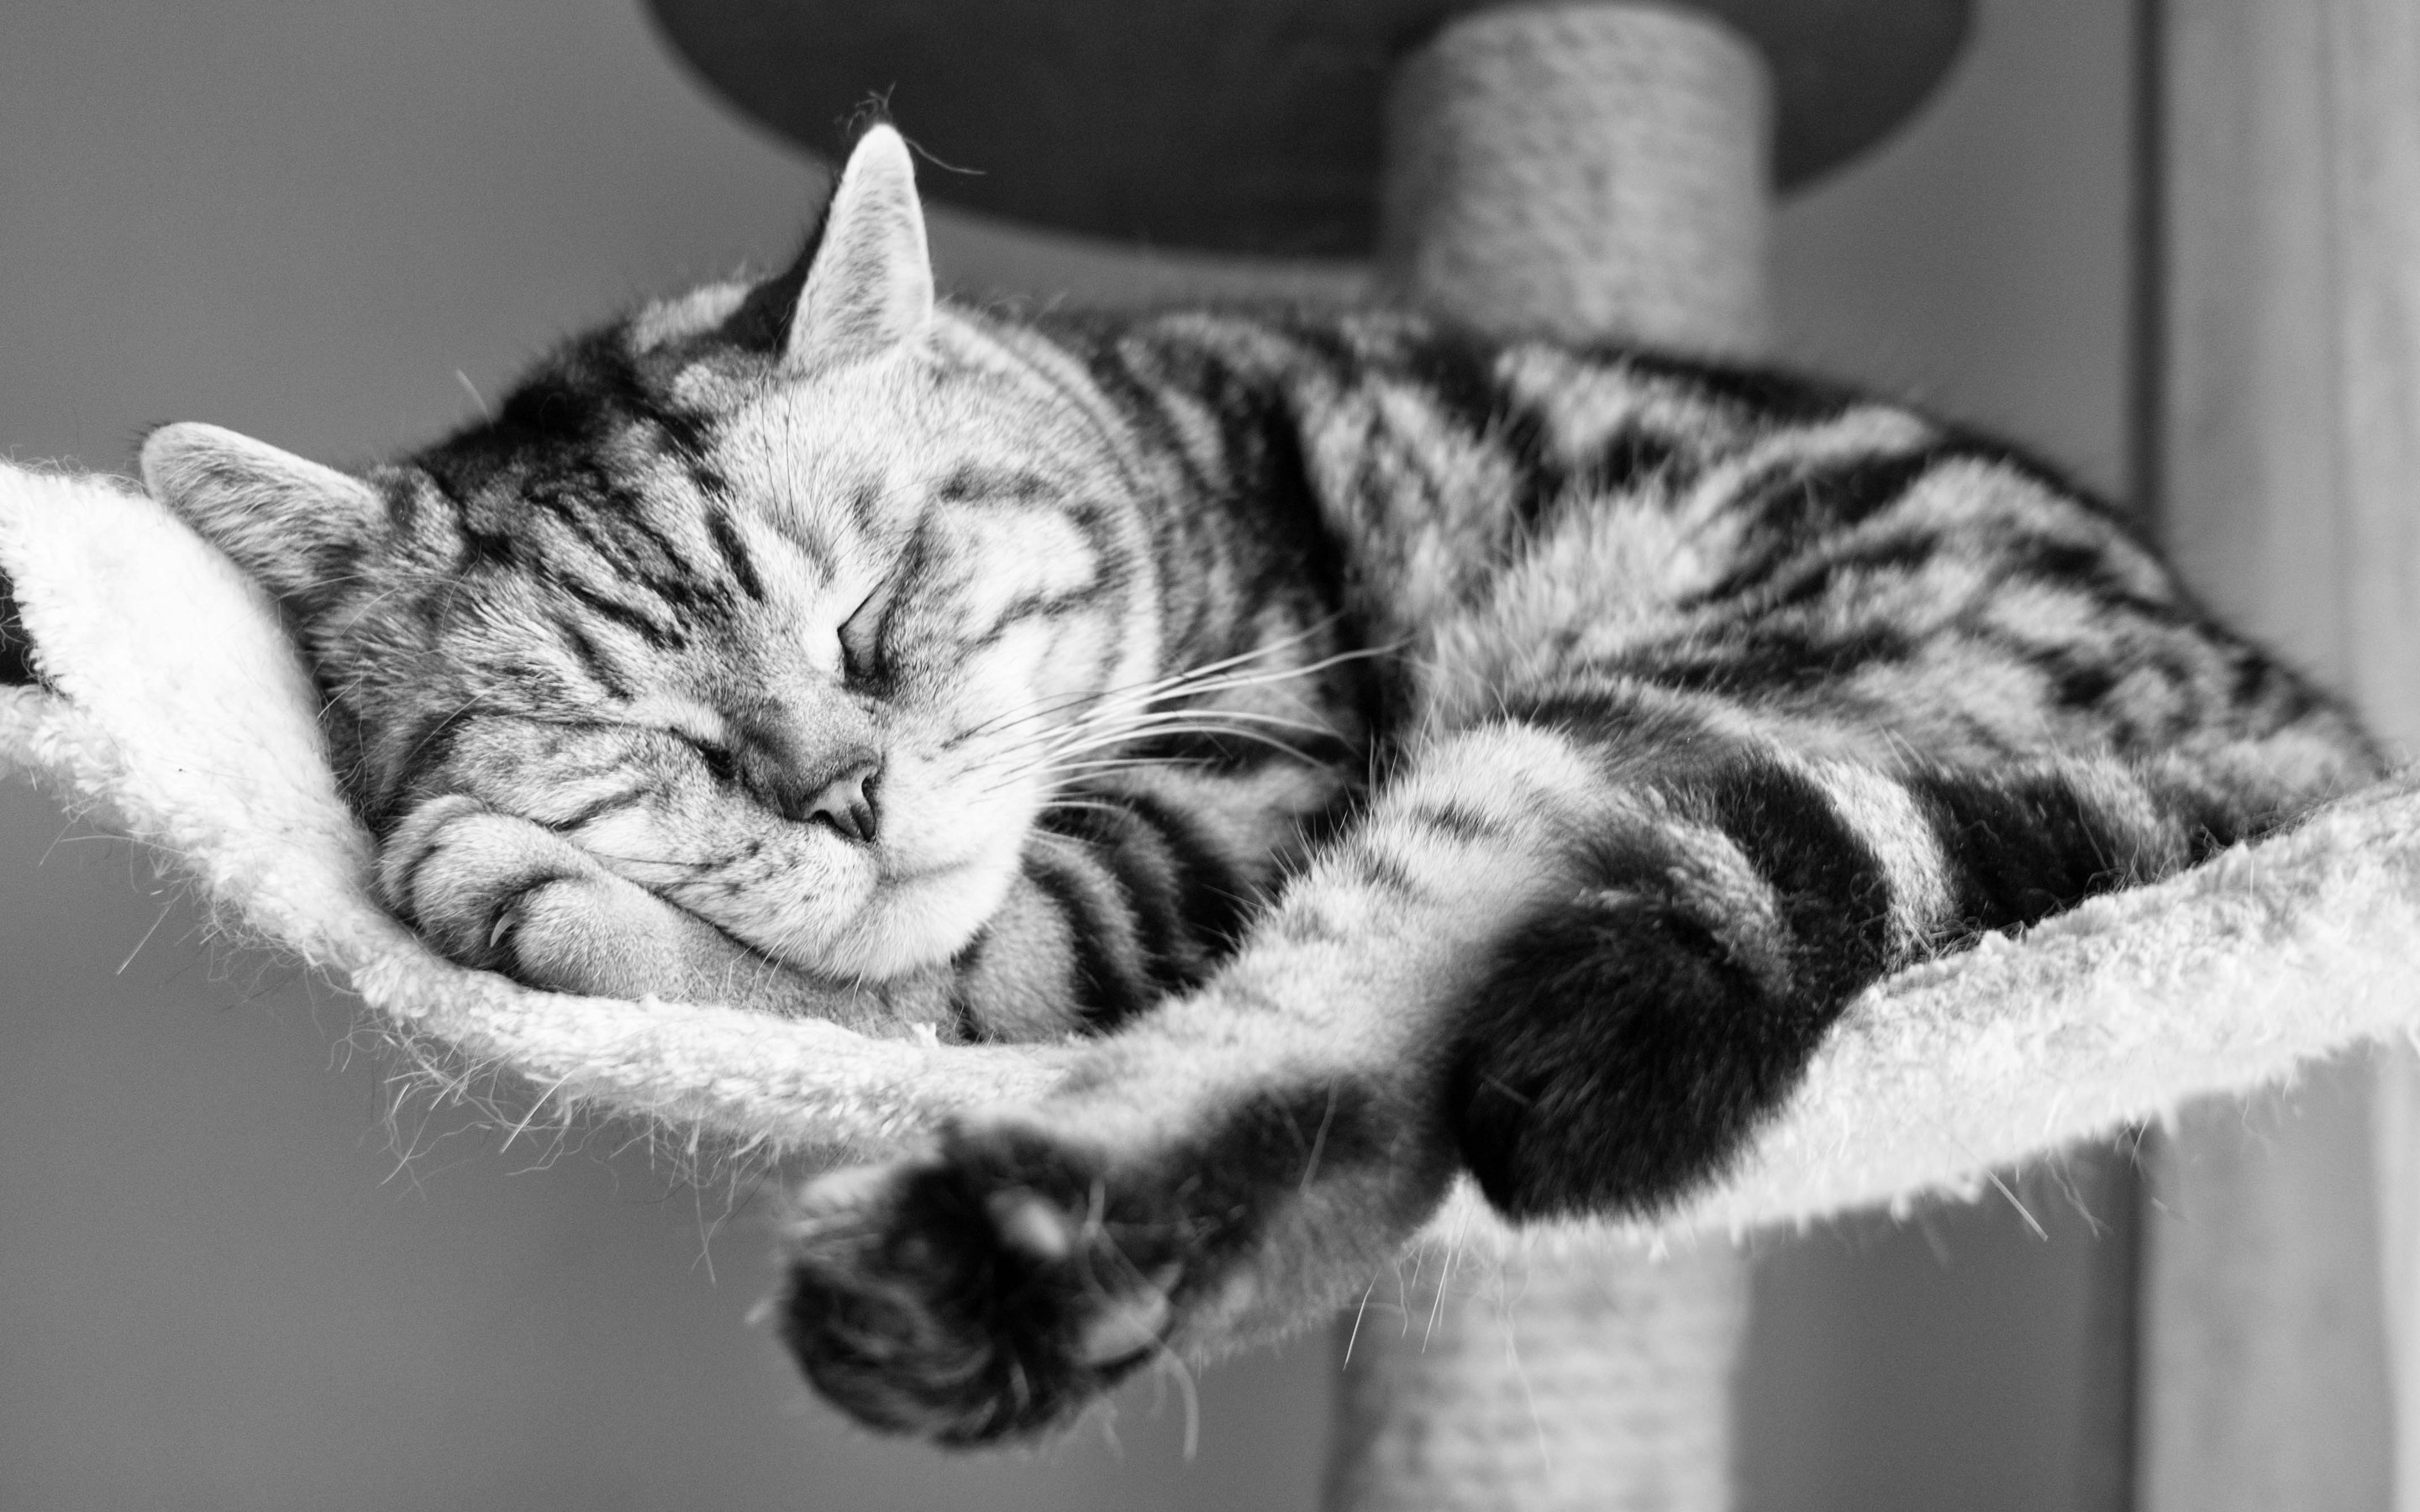 157444 免費下載壁紙 动物, 猫, 躺下来, 躺下, 有条纹的, 条纹, 体重, 星期四, 睡觉, 睡眠 屏保和圖片